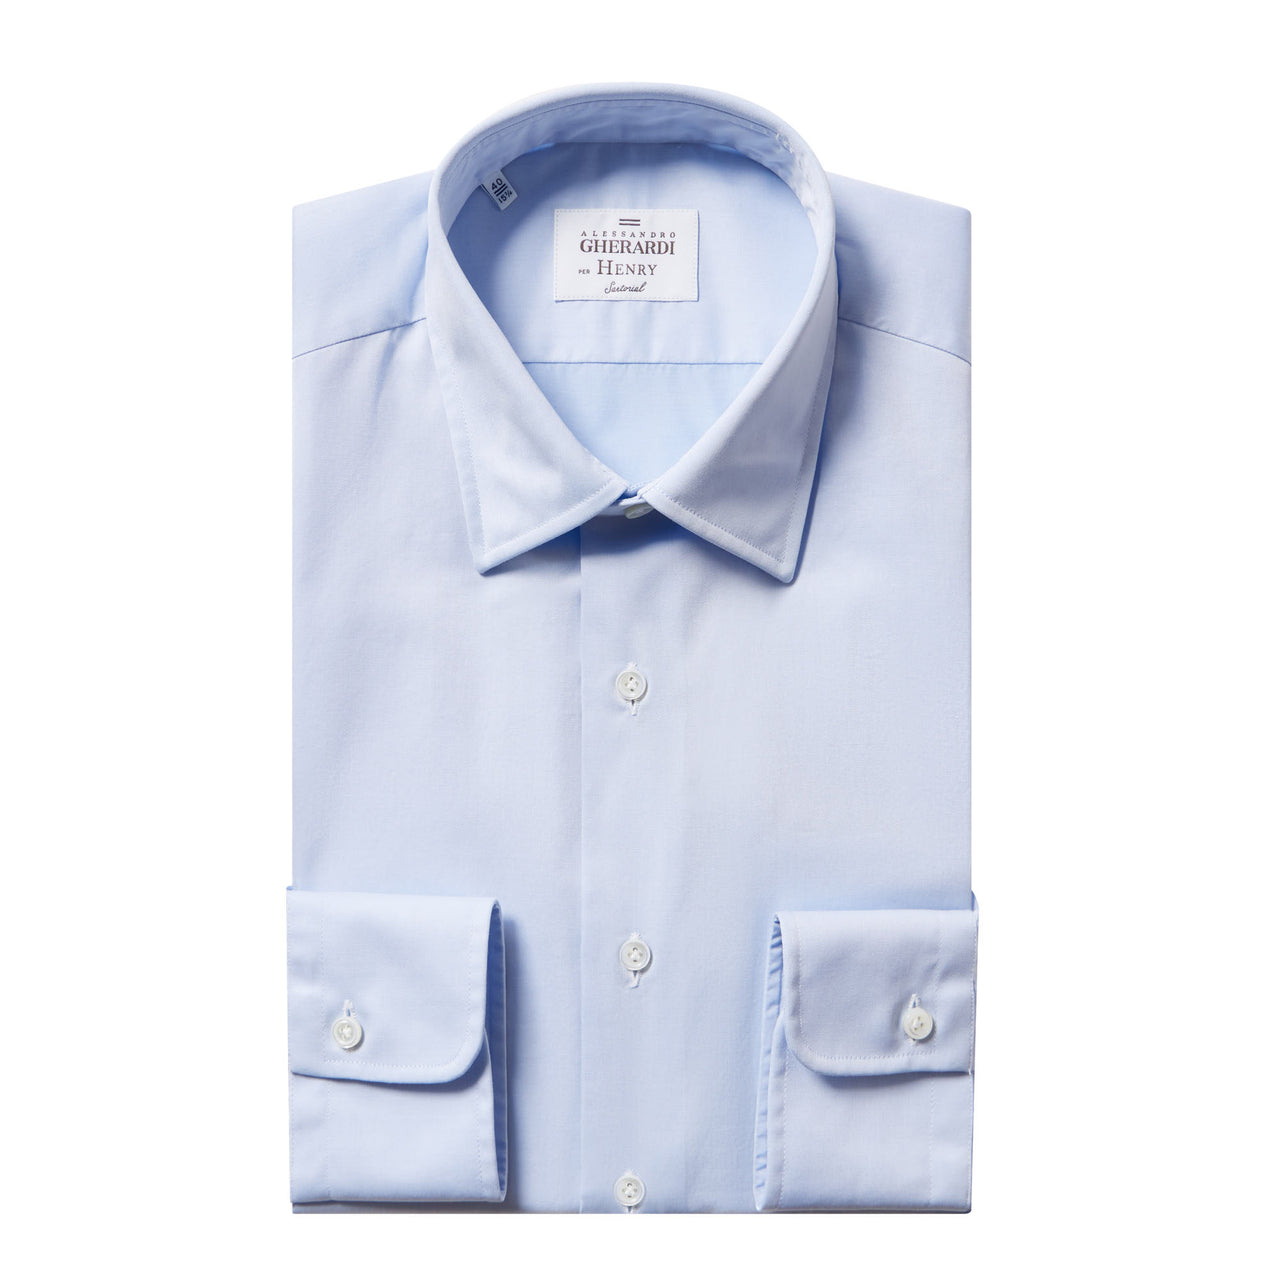 HENRY SARTORIAL X GHERARDI Classic Fit Twill Shirt Single Cuff LIGHT BLUE